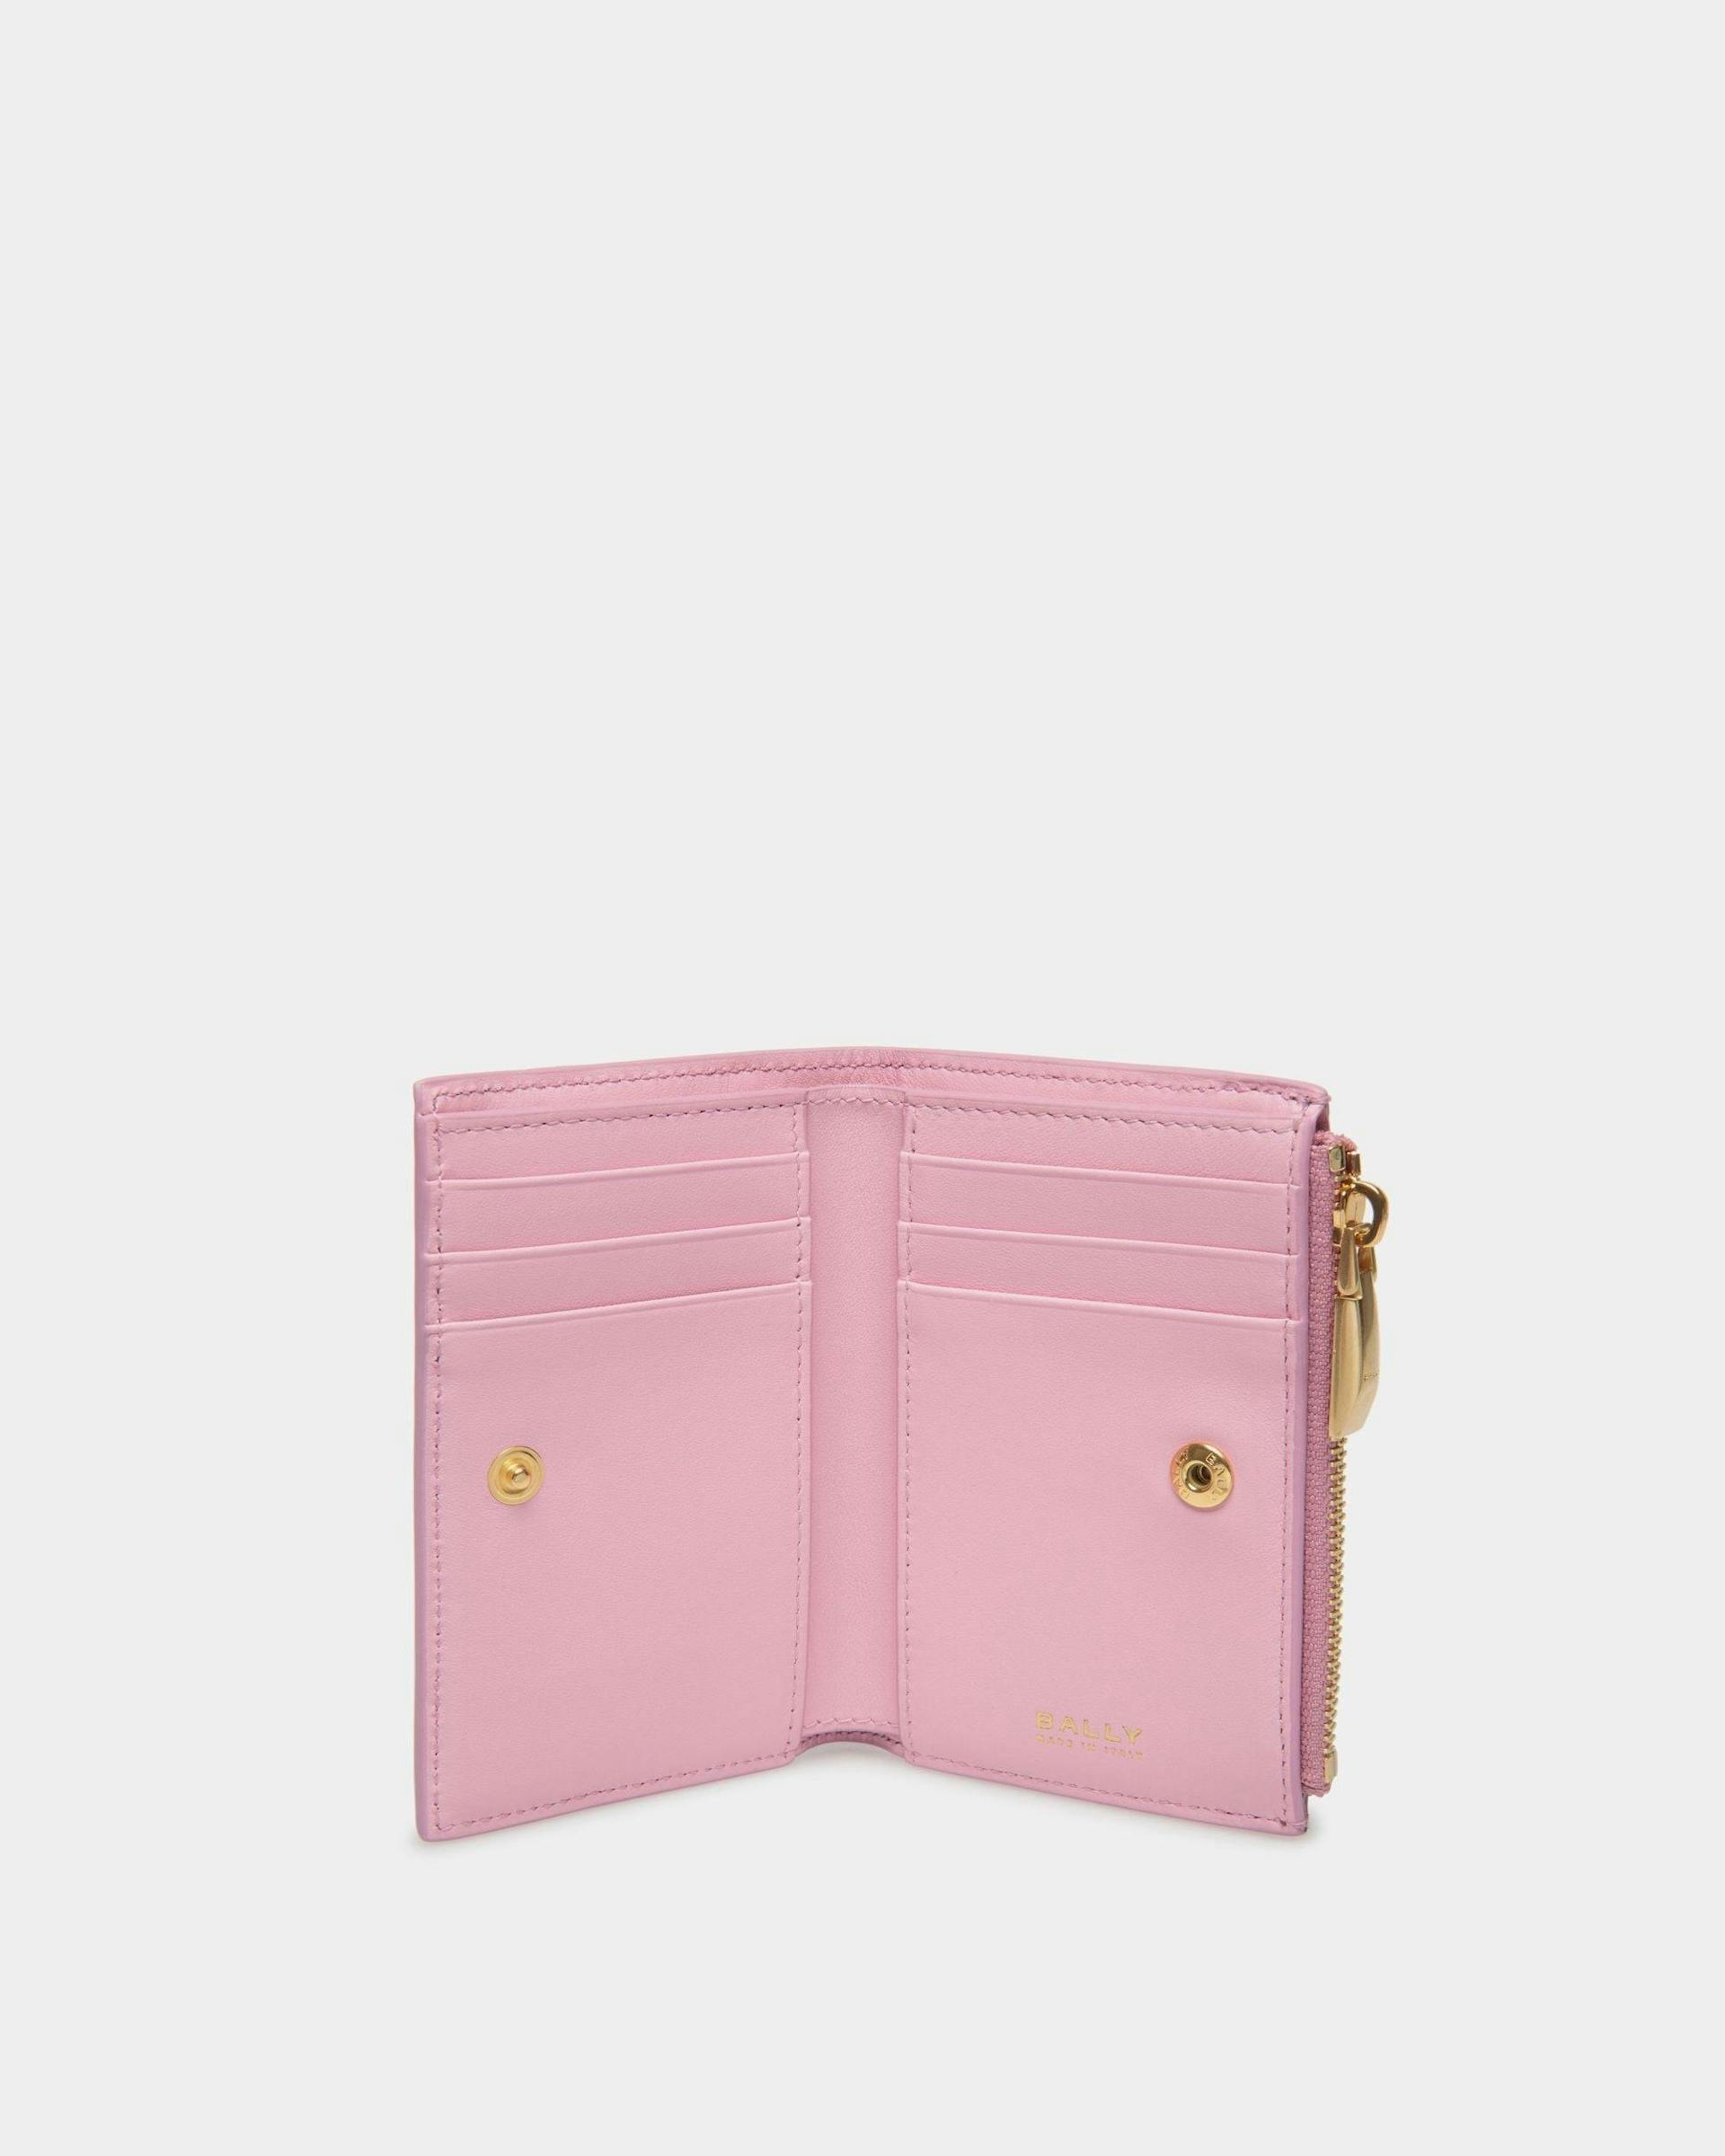 Women's Bally Spell Wallet in Pink Leather | Bally | Still Life Open / Inside